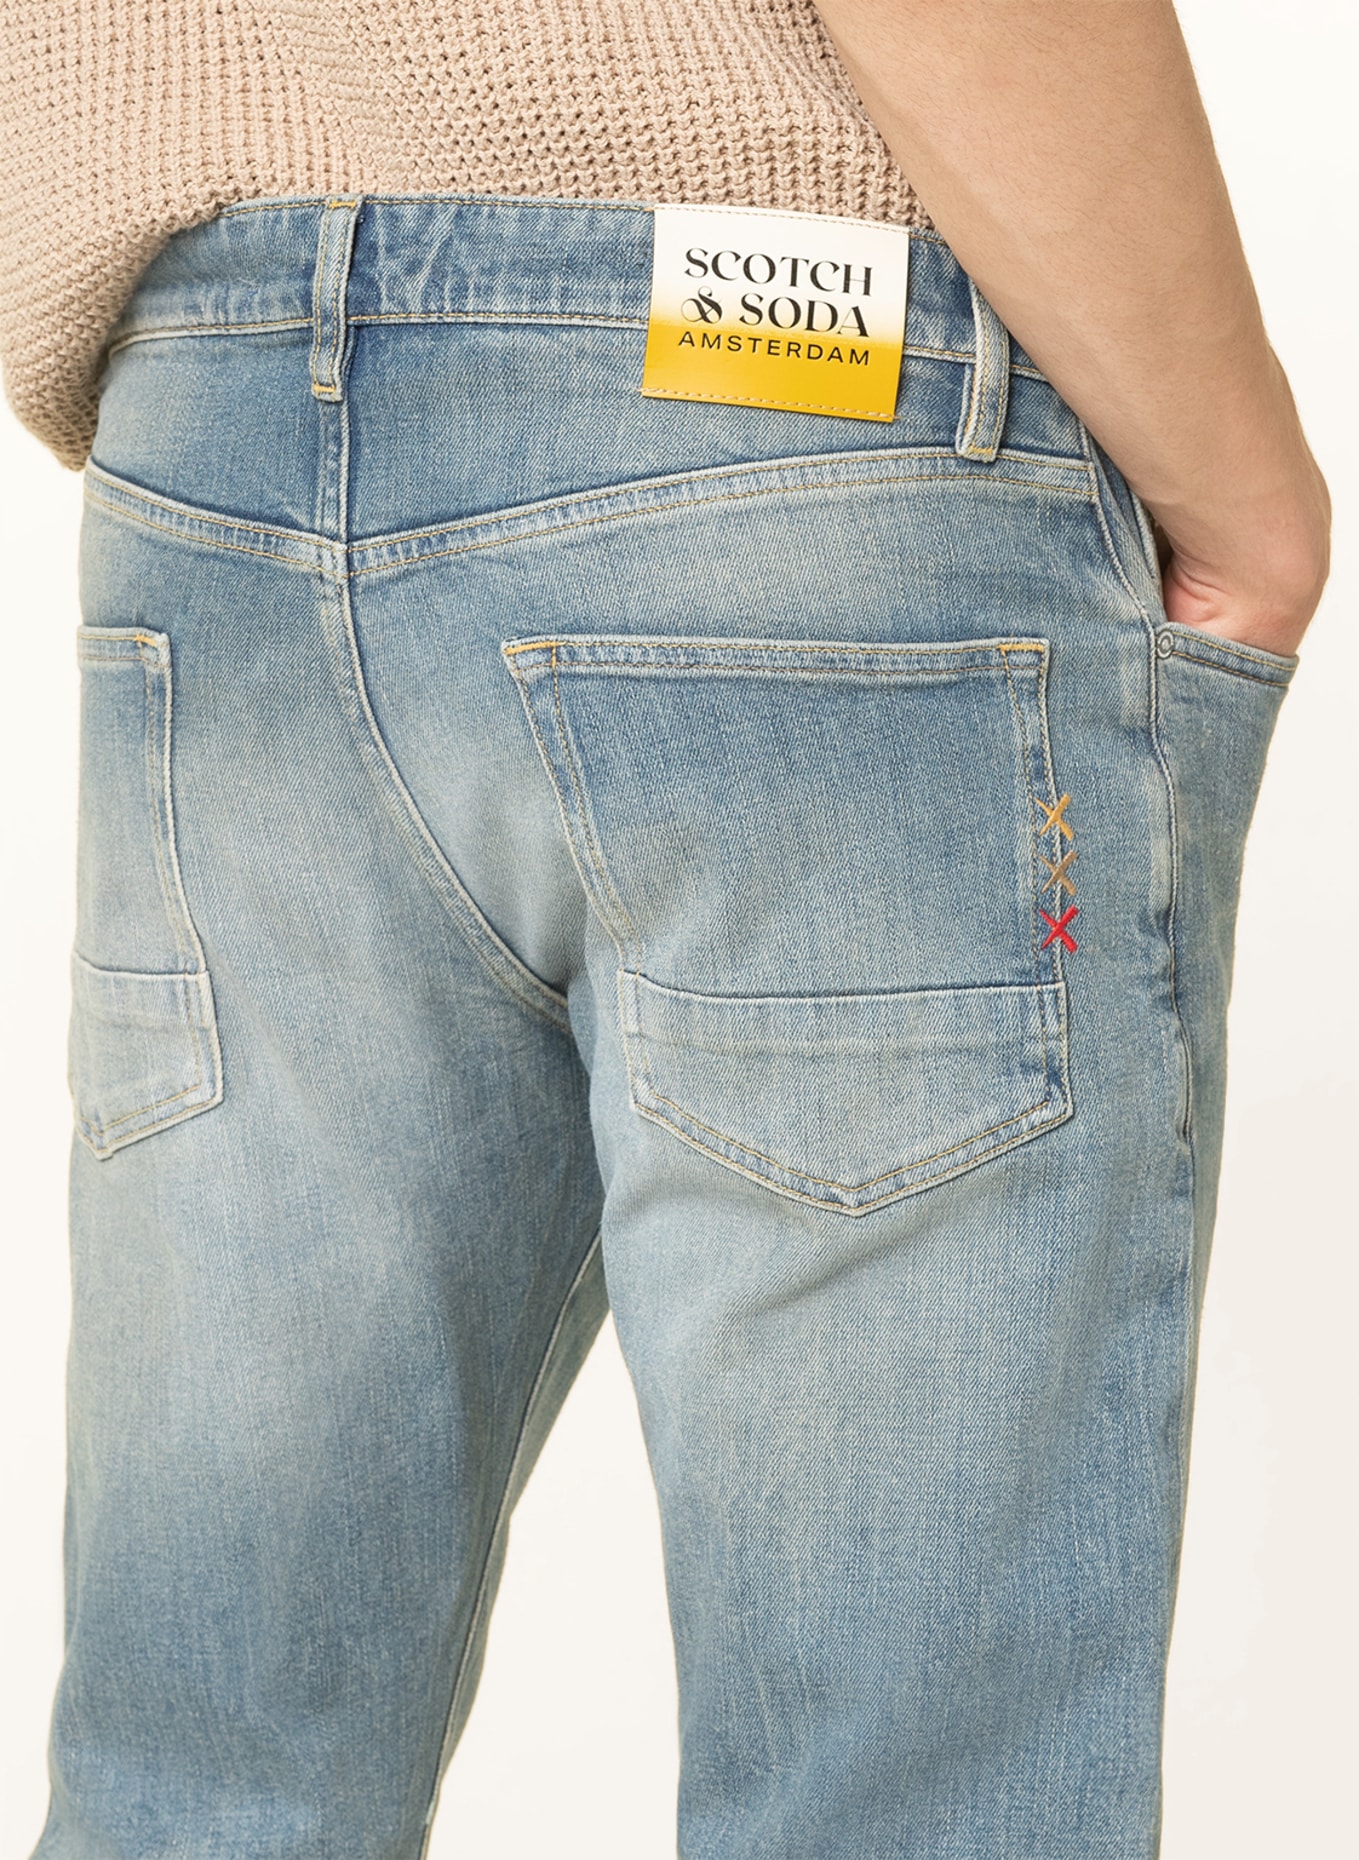 SCOTCH & SODA Jeans RALSTON Regular Slim Fit, Farbe: 5234 Scrape And Move (Bild 5)